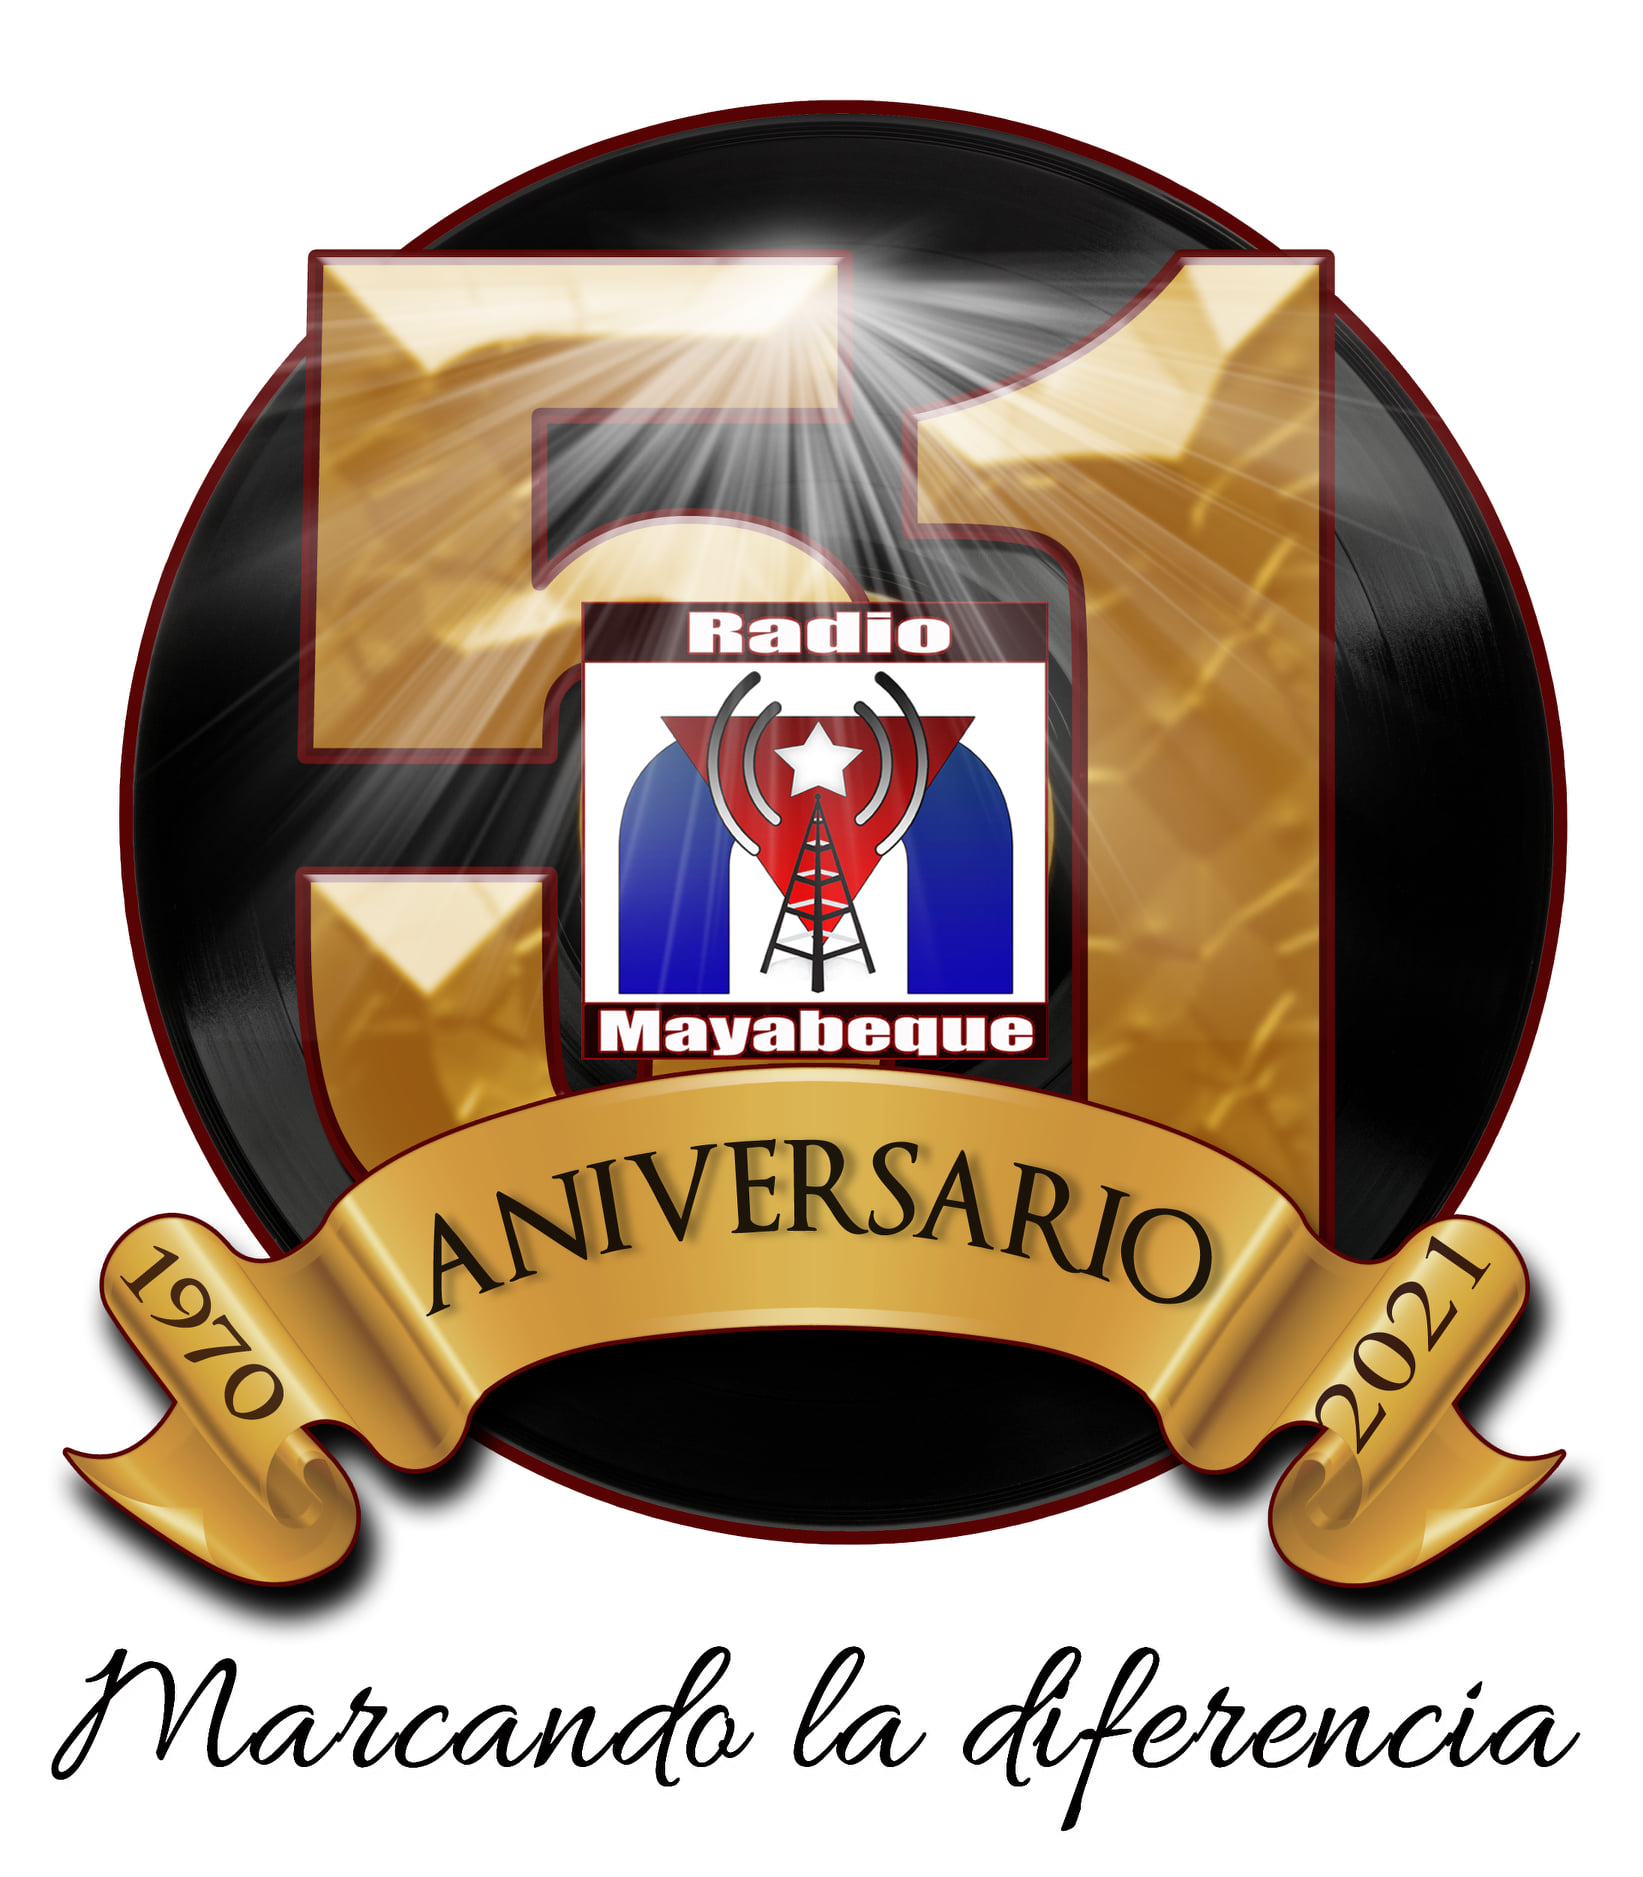 51st Anniversary of Radio Mayabeque